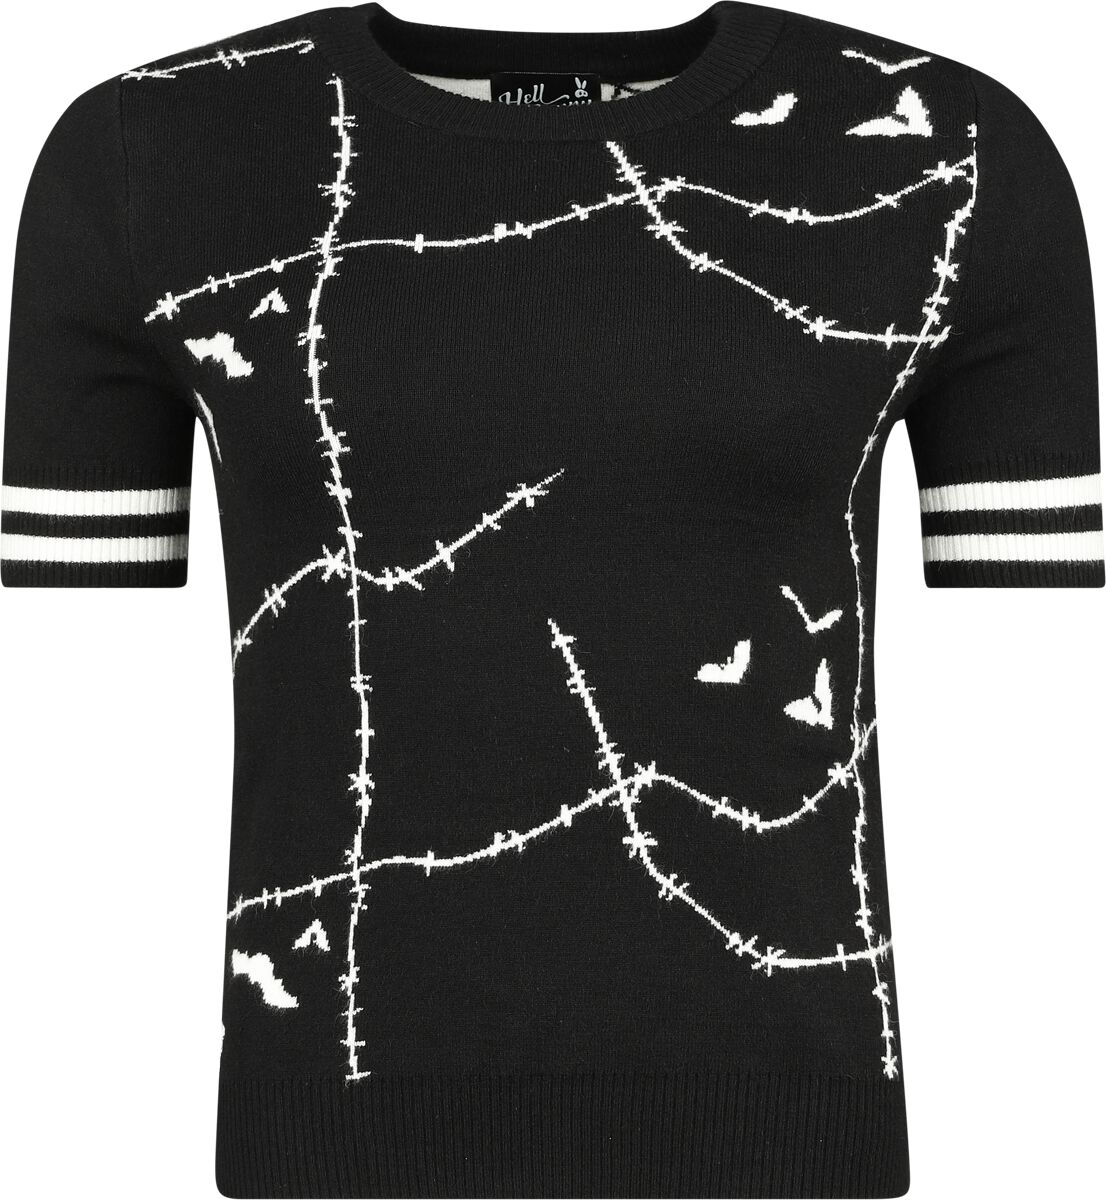 Hell Bunny Stitches Top T-Shirt schwarz weiß in L